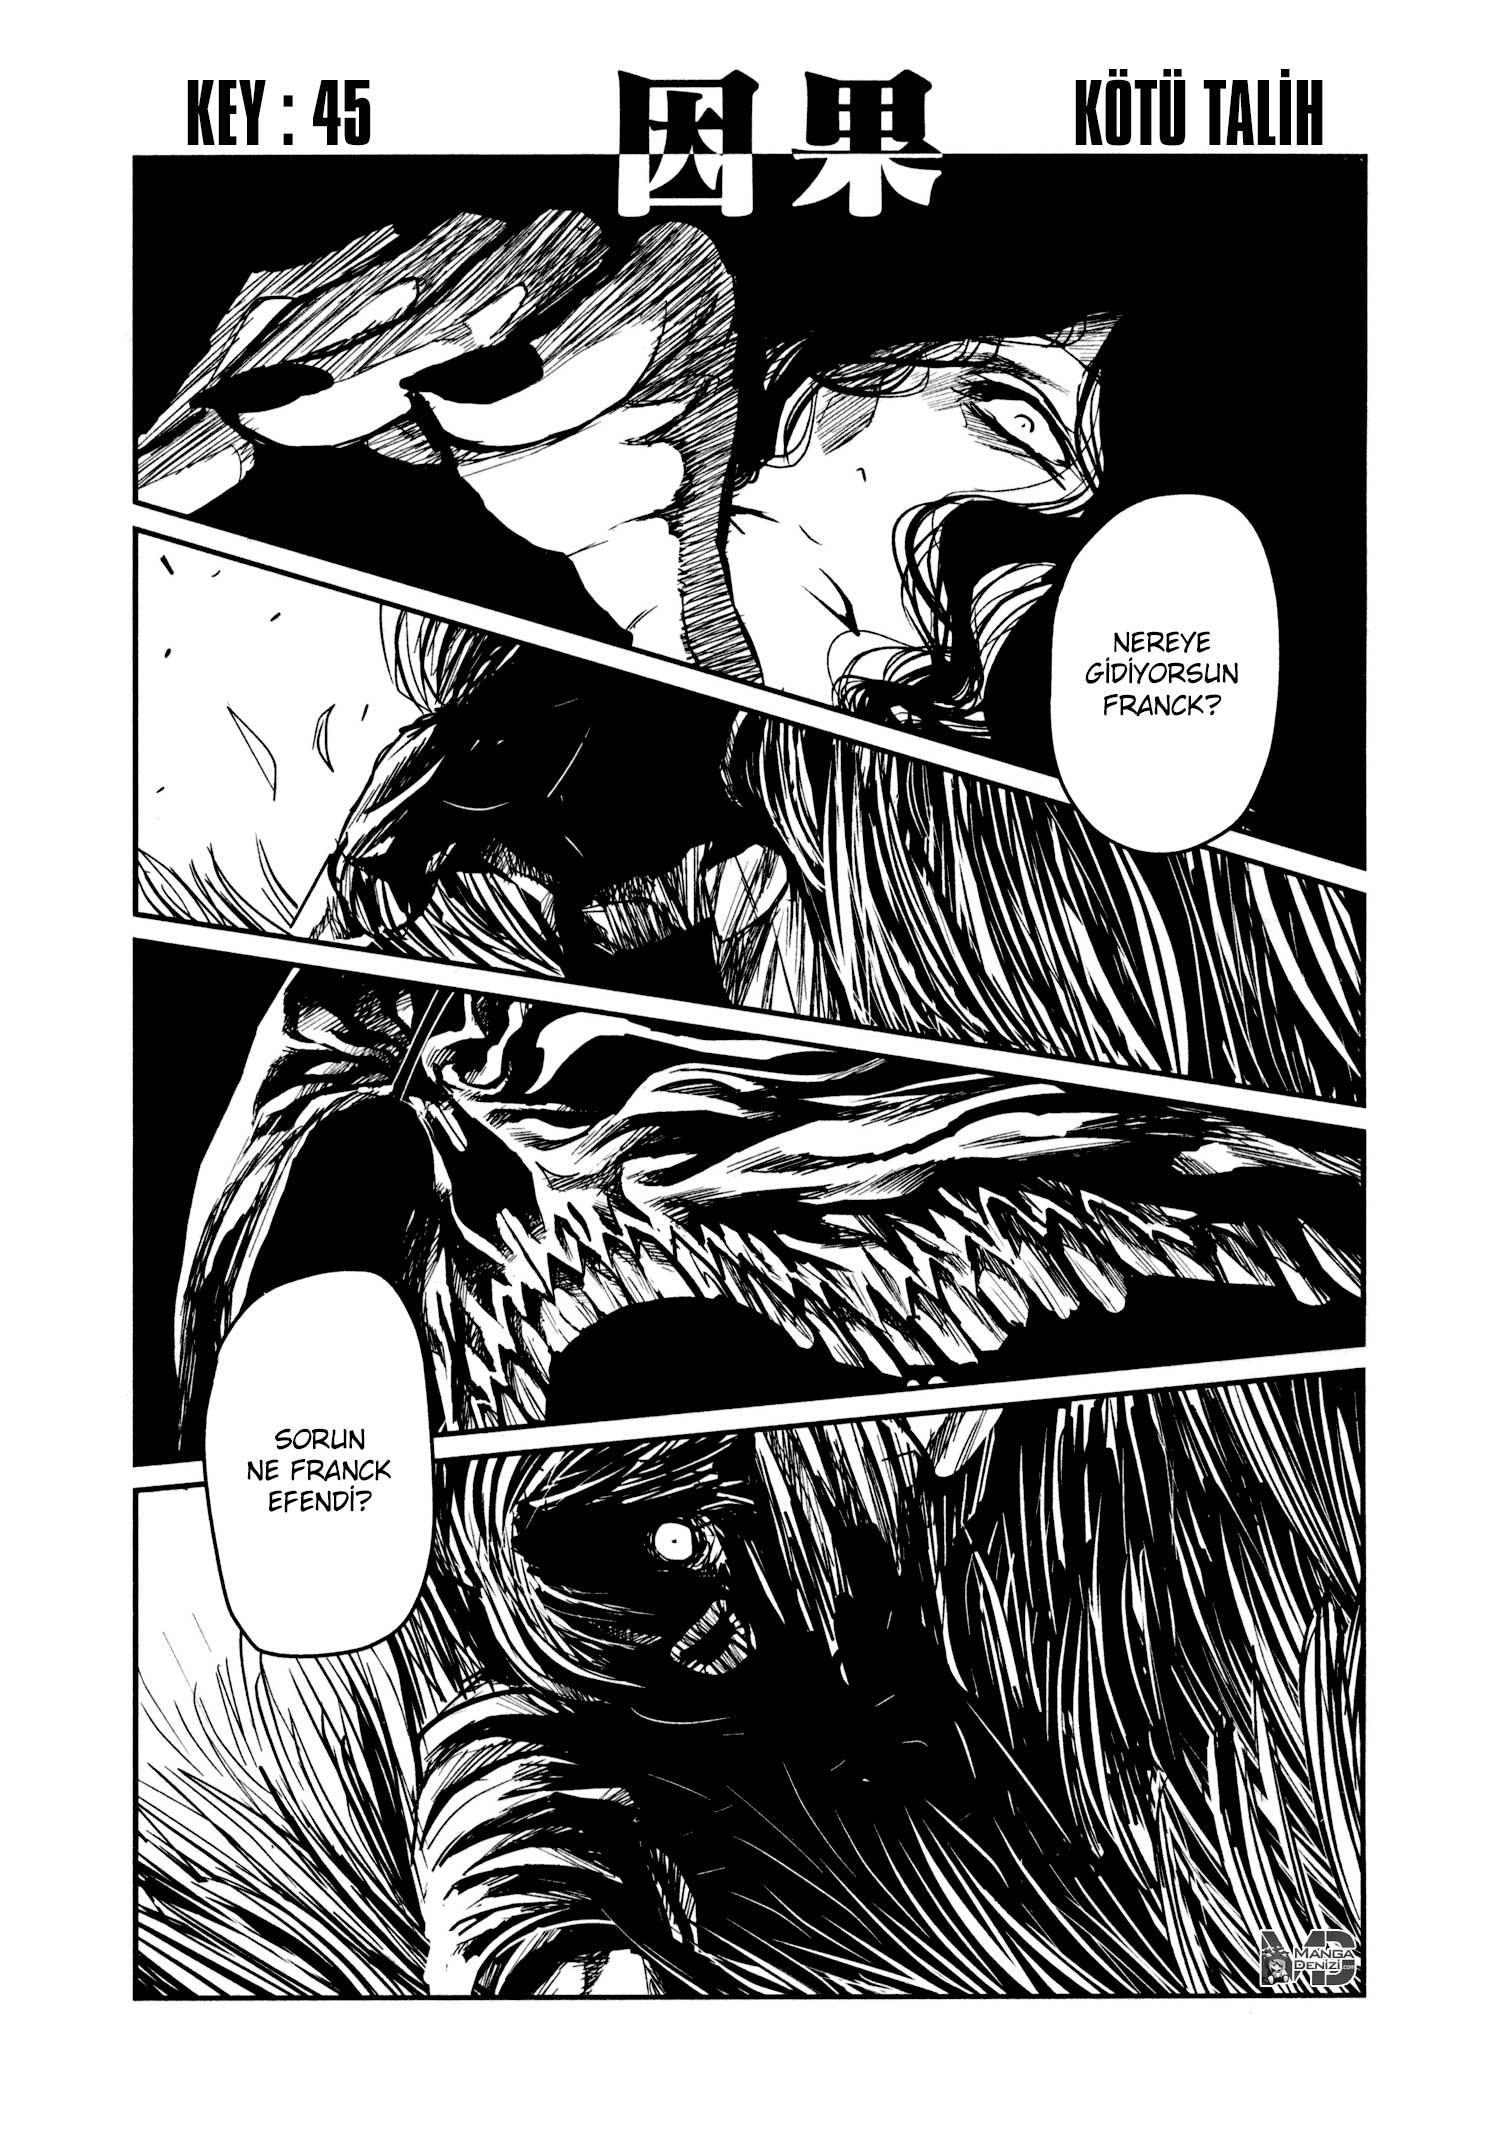 Keyman: The Hand of Judgement mangasının 45 bölümünün 2. sayfasını okuyorsunuz.